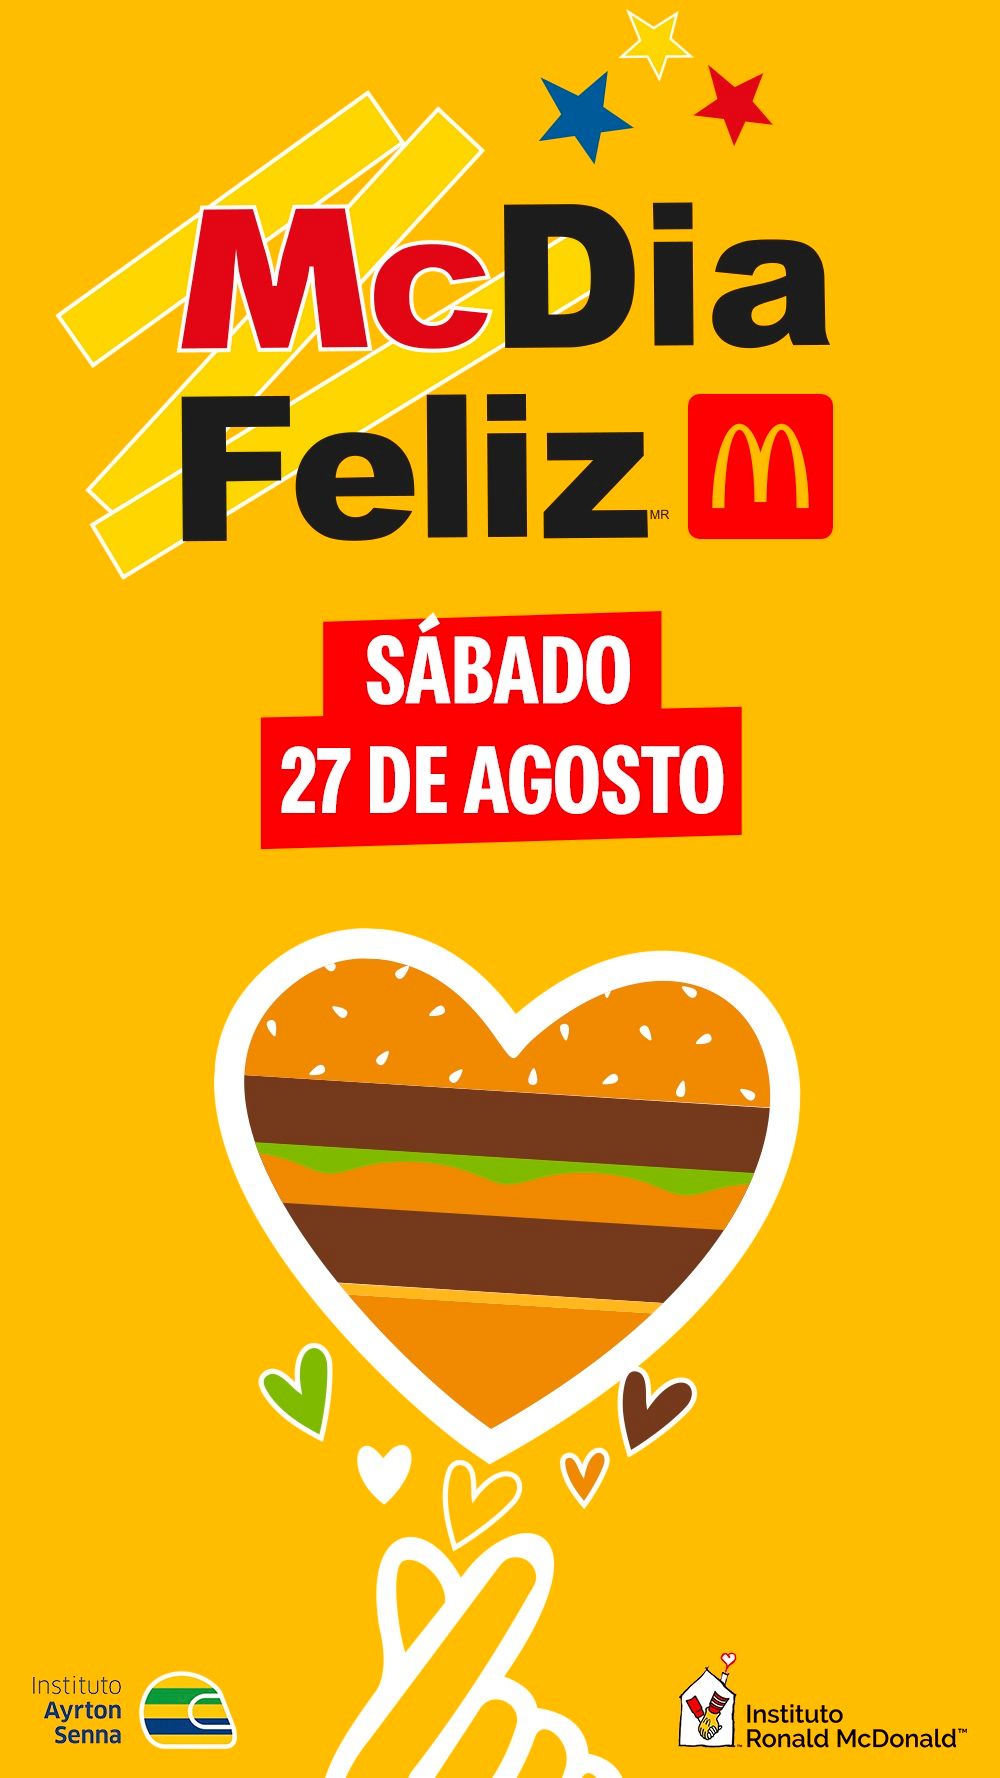 Participe em McDia Feliz para os jovens McDonald's